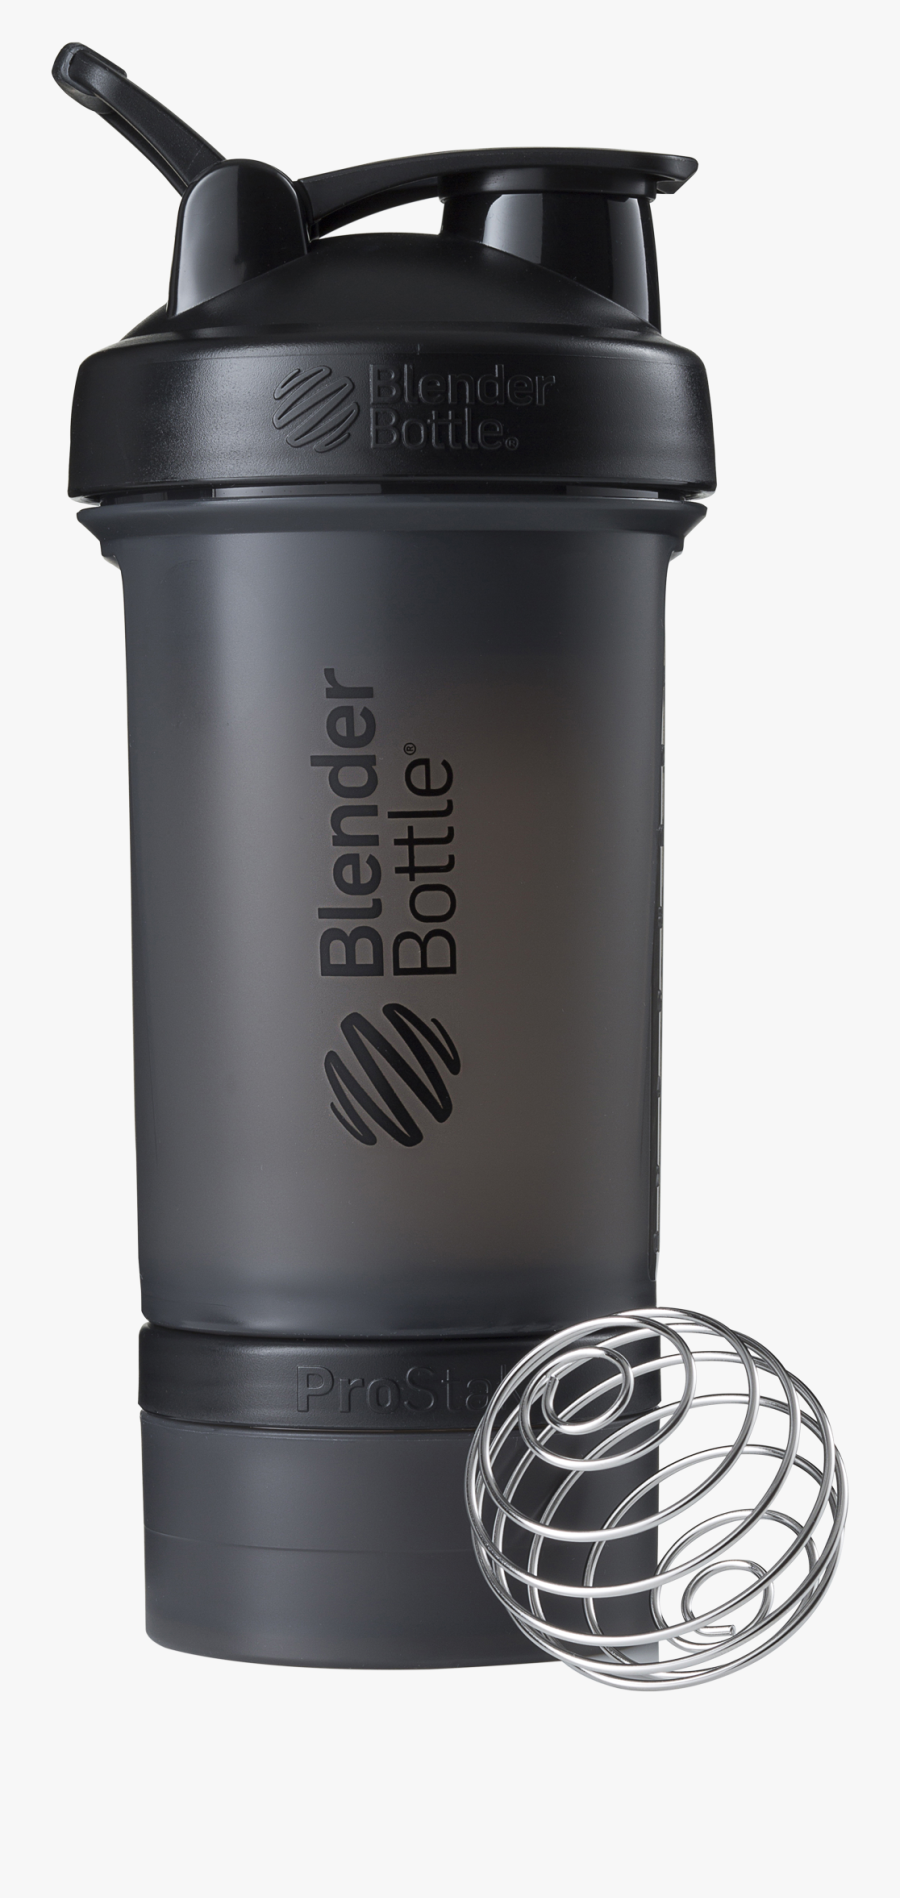 Blender Bottle Prostak Black, Transparent Clipart